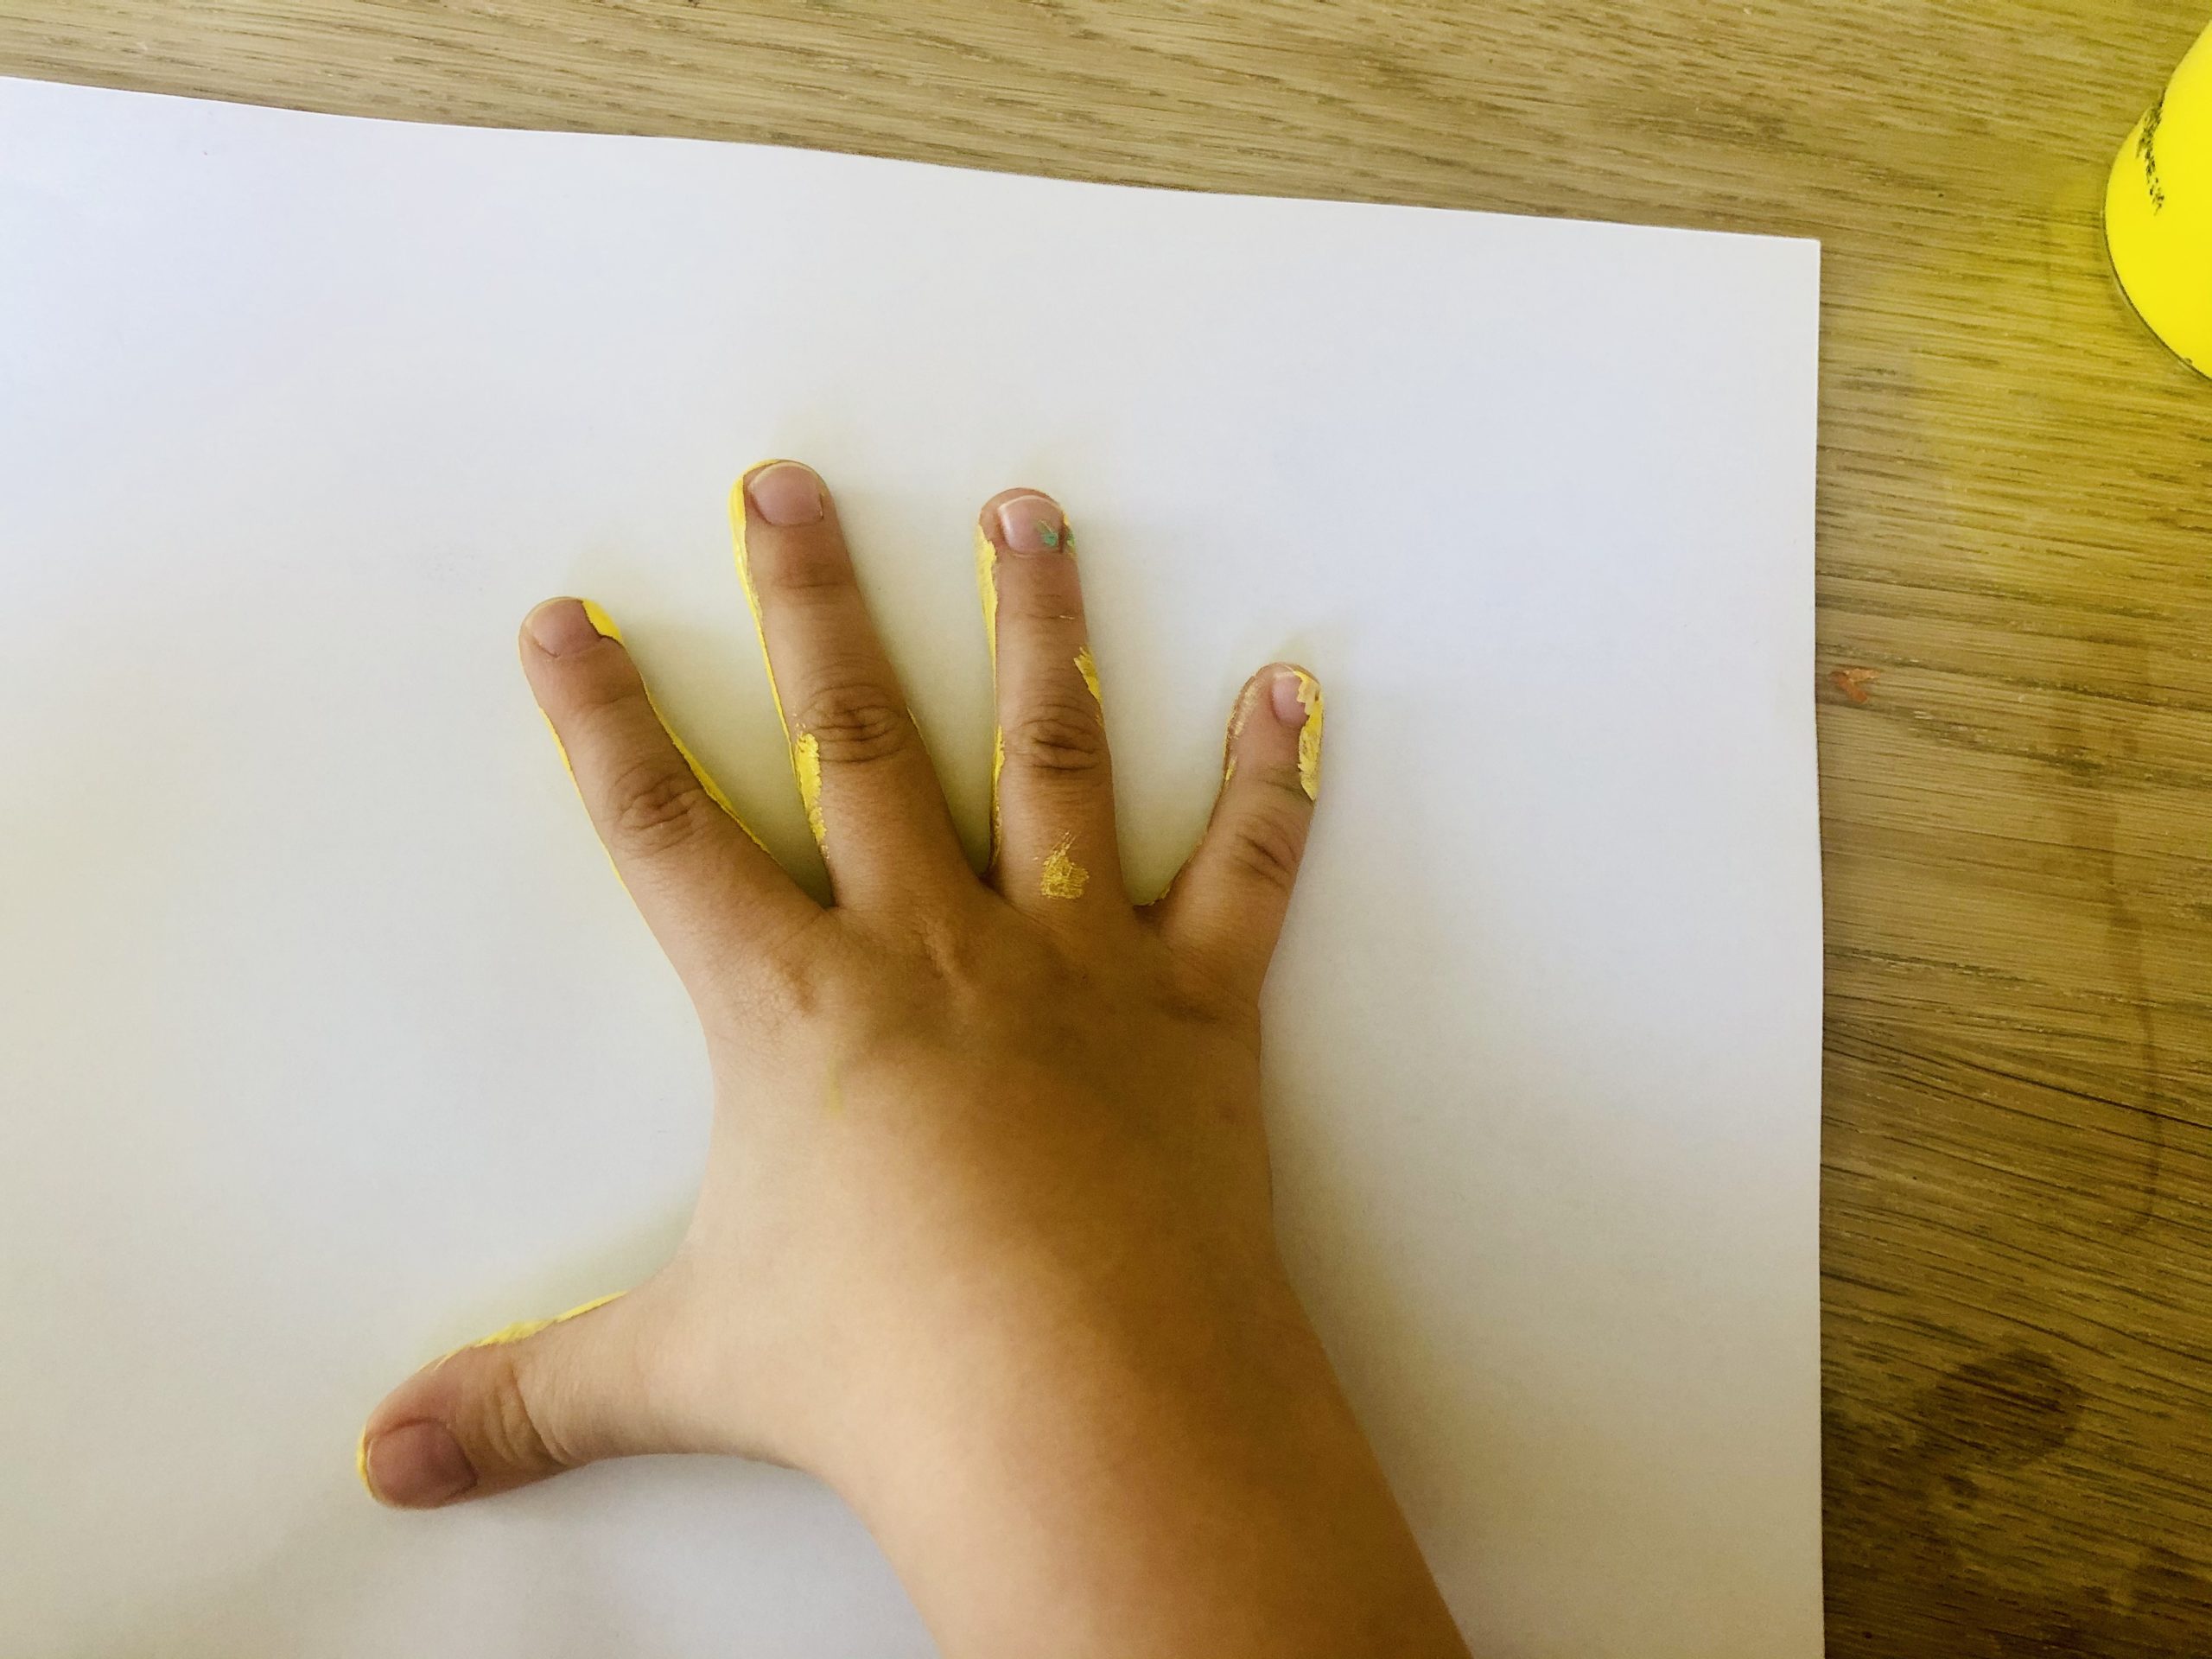 Bild zum Schritt 12 für die Kinder-Beschäftigung: 'Anschließend drückt ihr die Hand auf ein Papier.  ...'